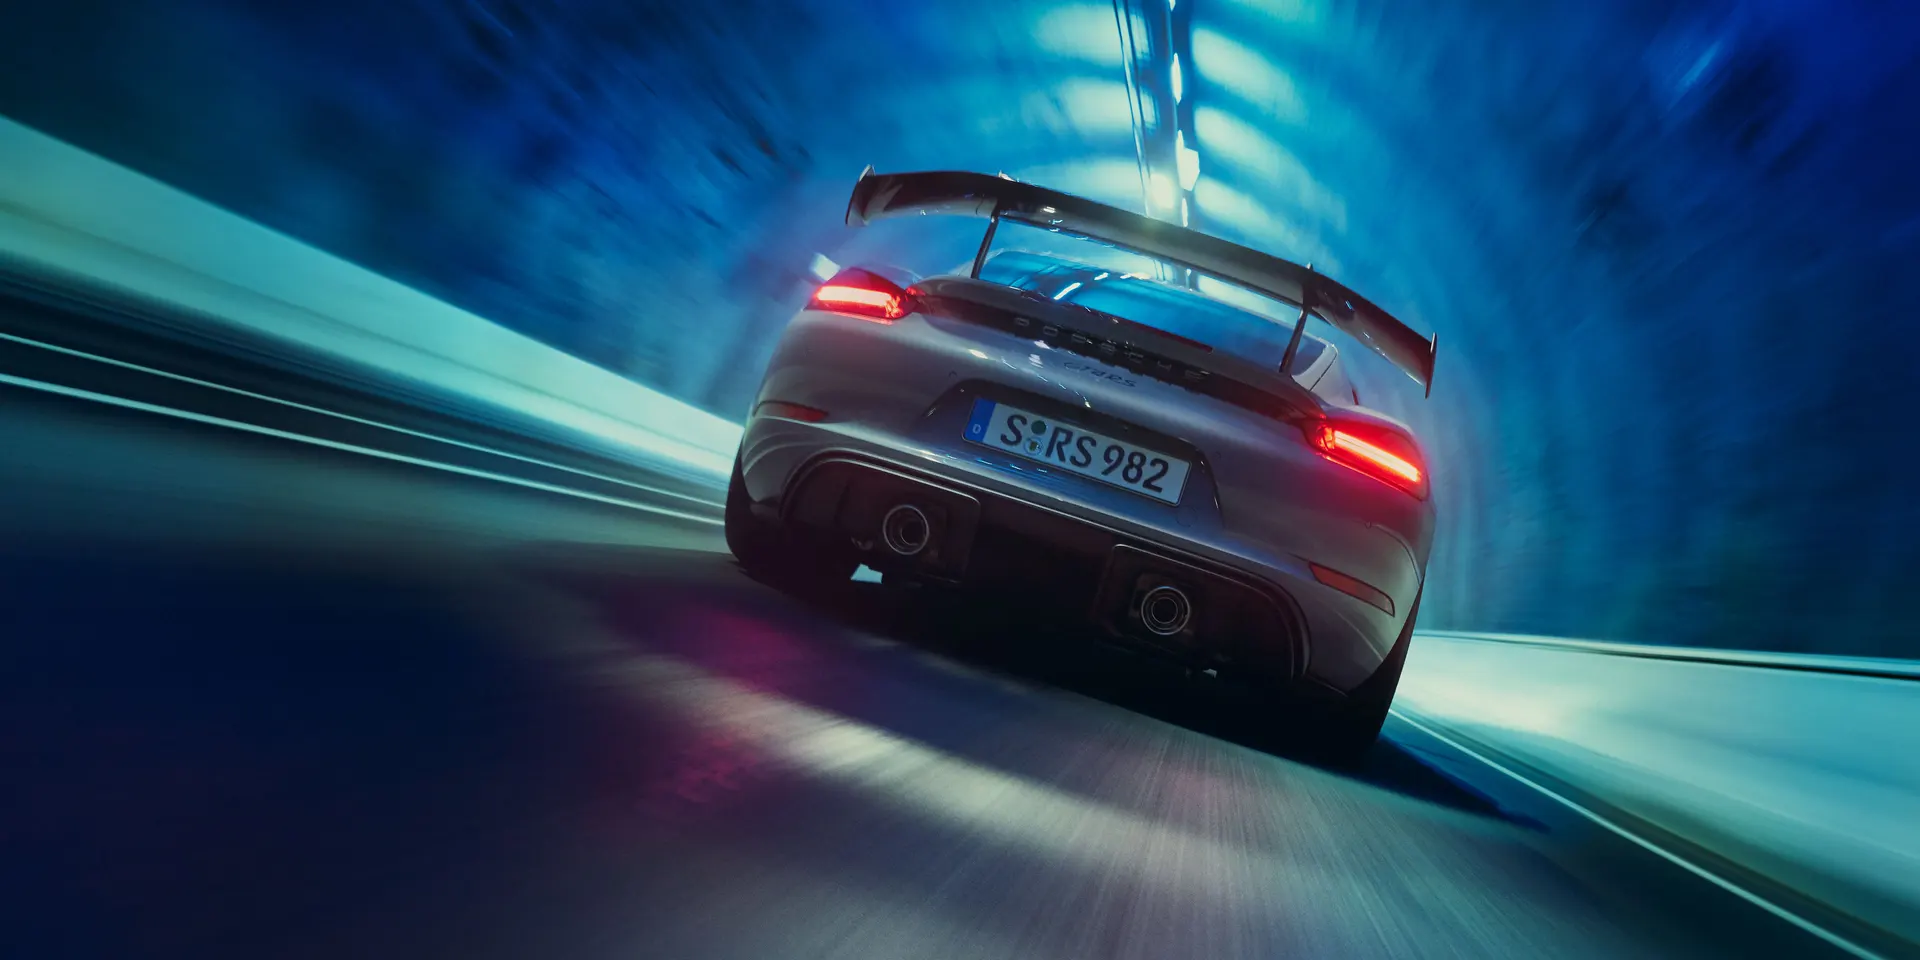 Porsche - Motor sporlari karakterine sahip sade ses.